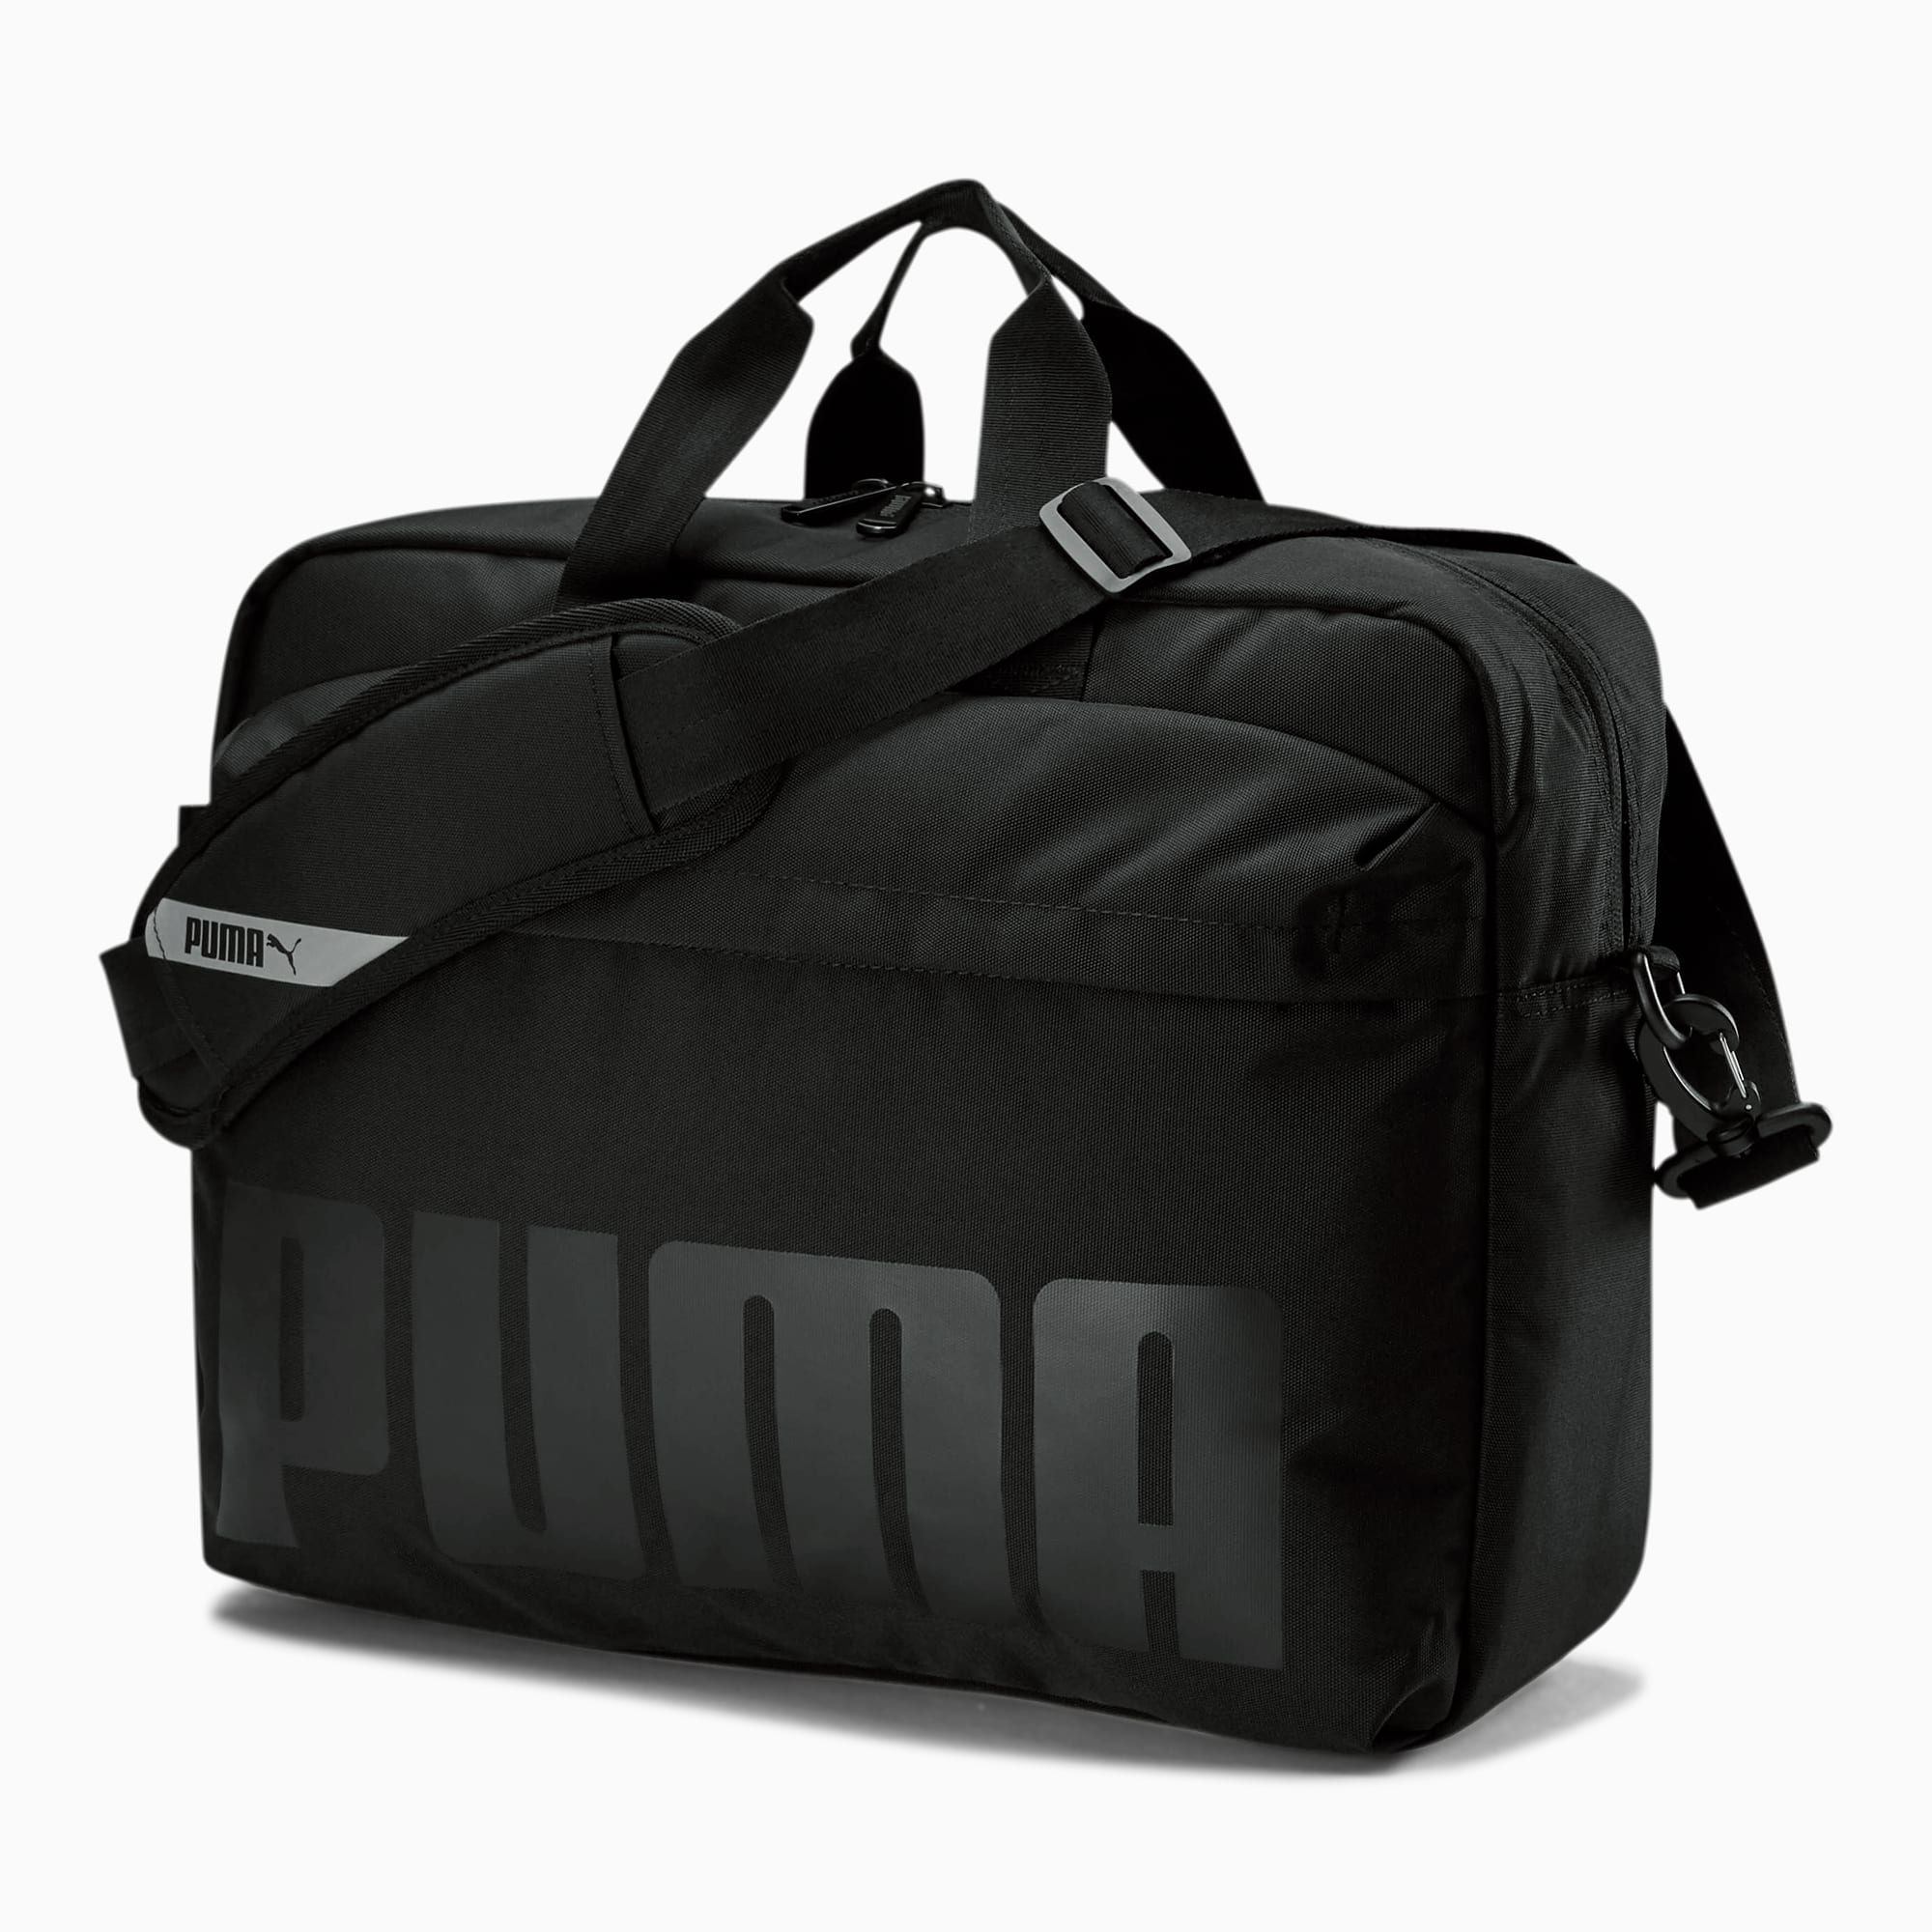 puma team messenger bag